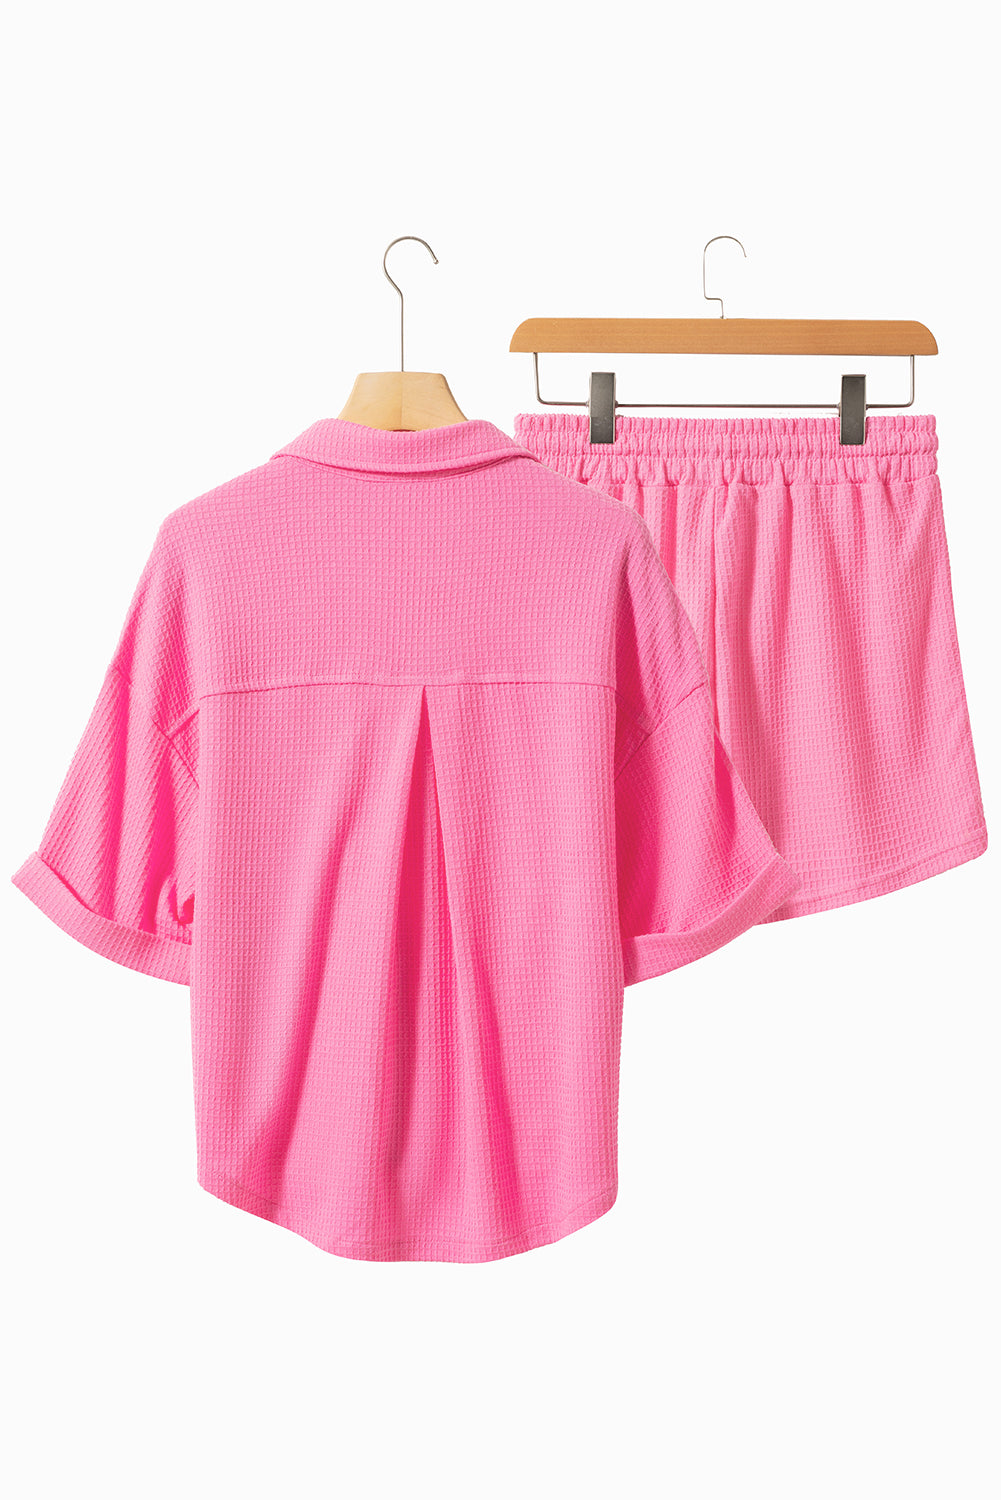 Hellrosa strukturiertes Hemd-Shorts-Outfit mit Brusttasche und halblangen Ärmeln